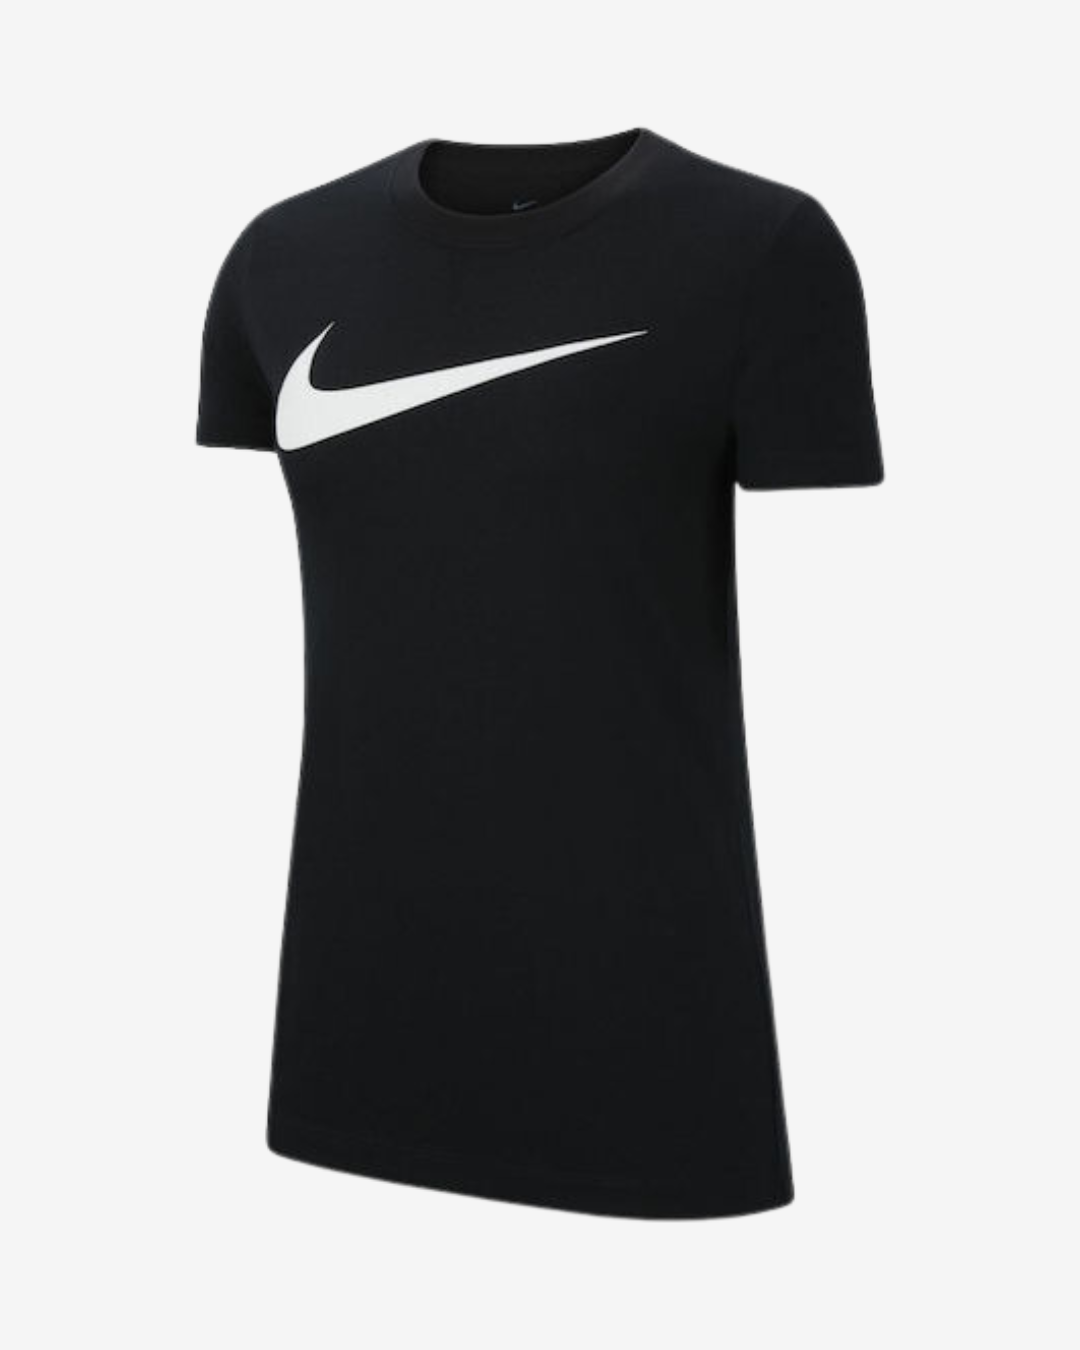 Billede af Nike Dri-fit park 20 dame t-shirt - Sort - Str. XS - Modish.dk